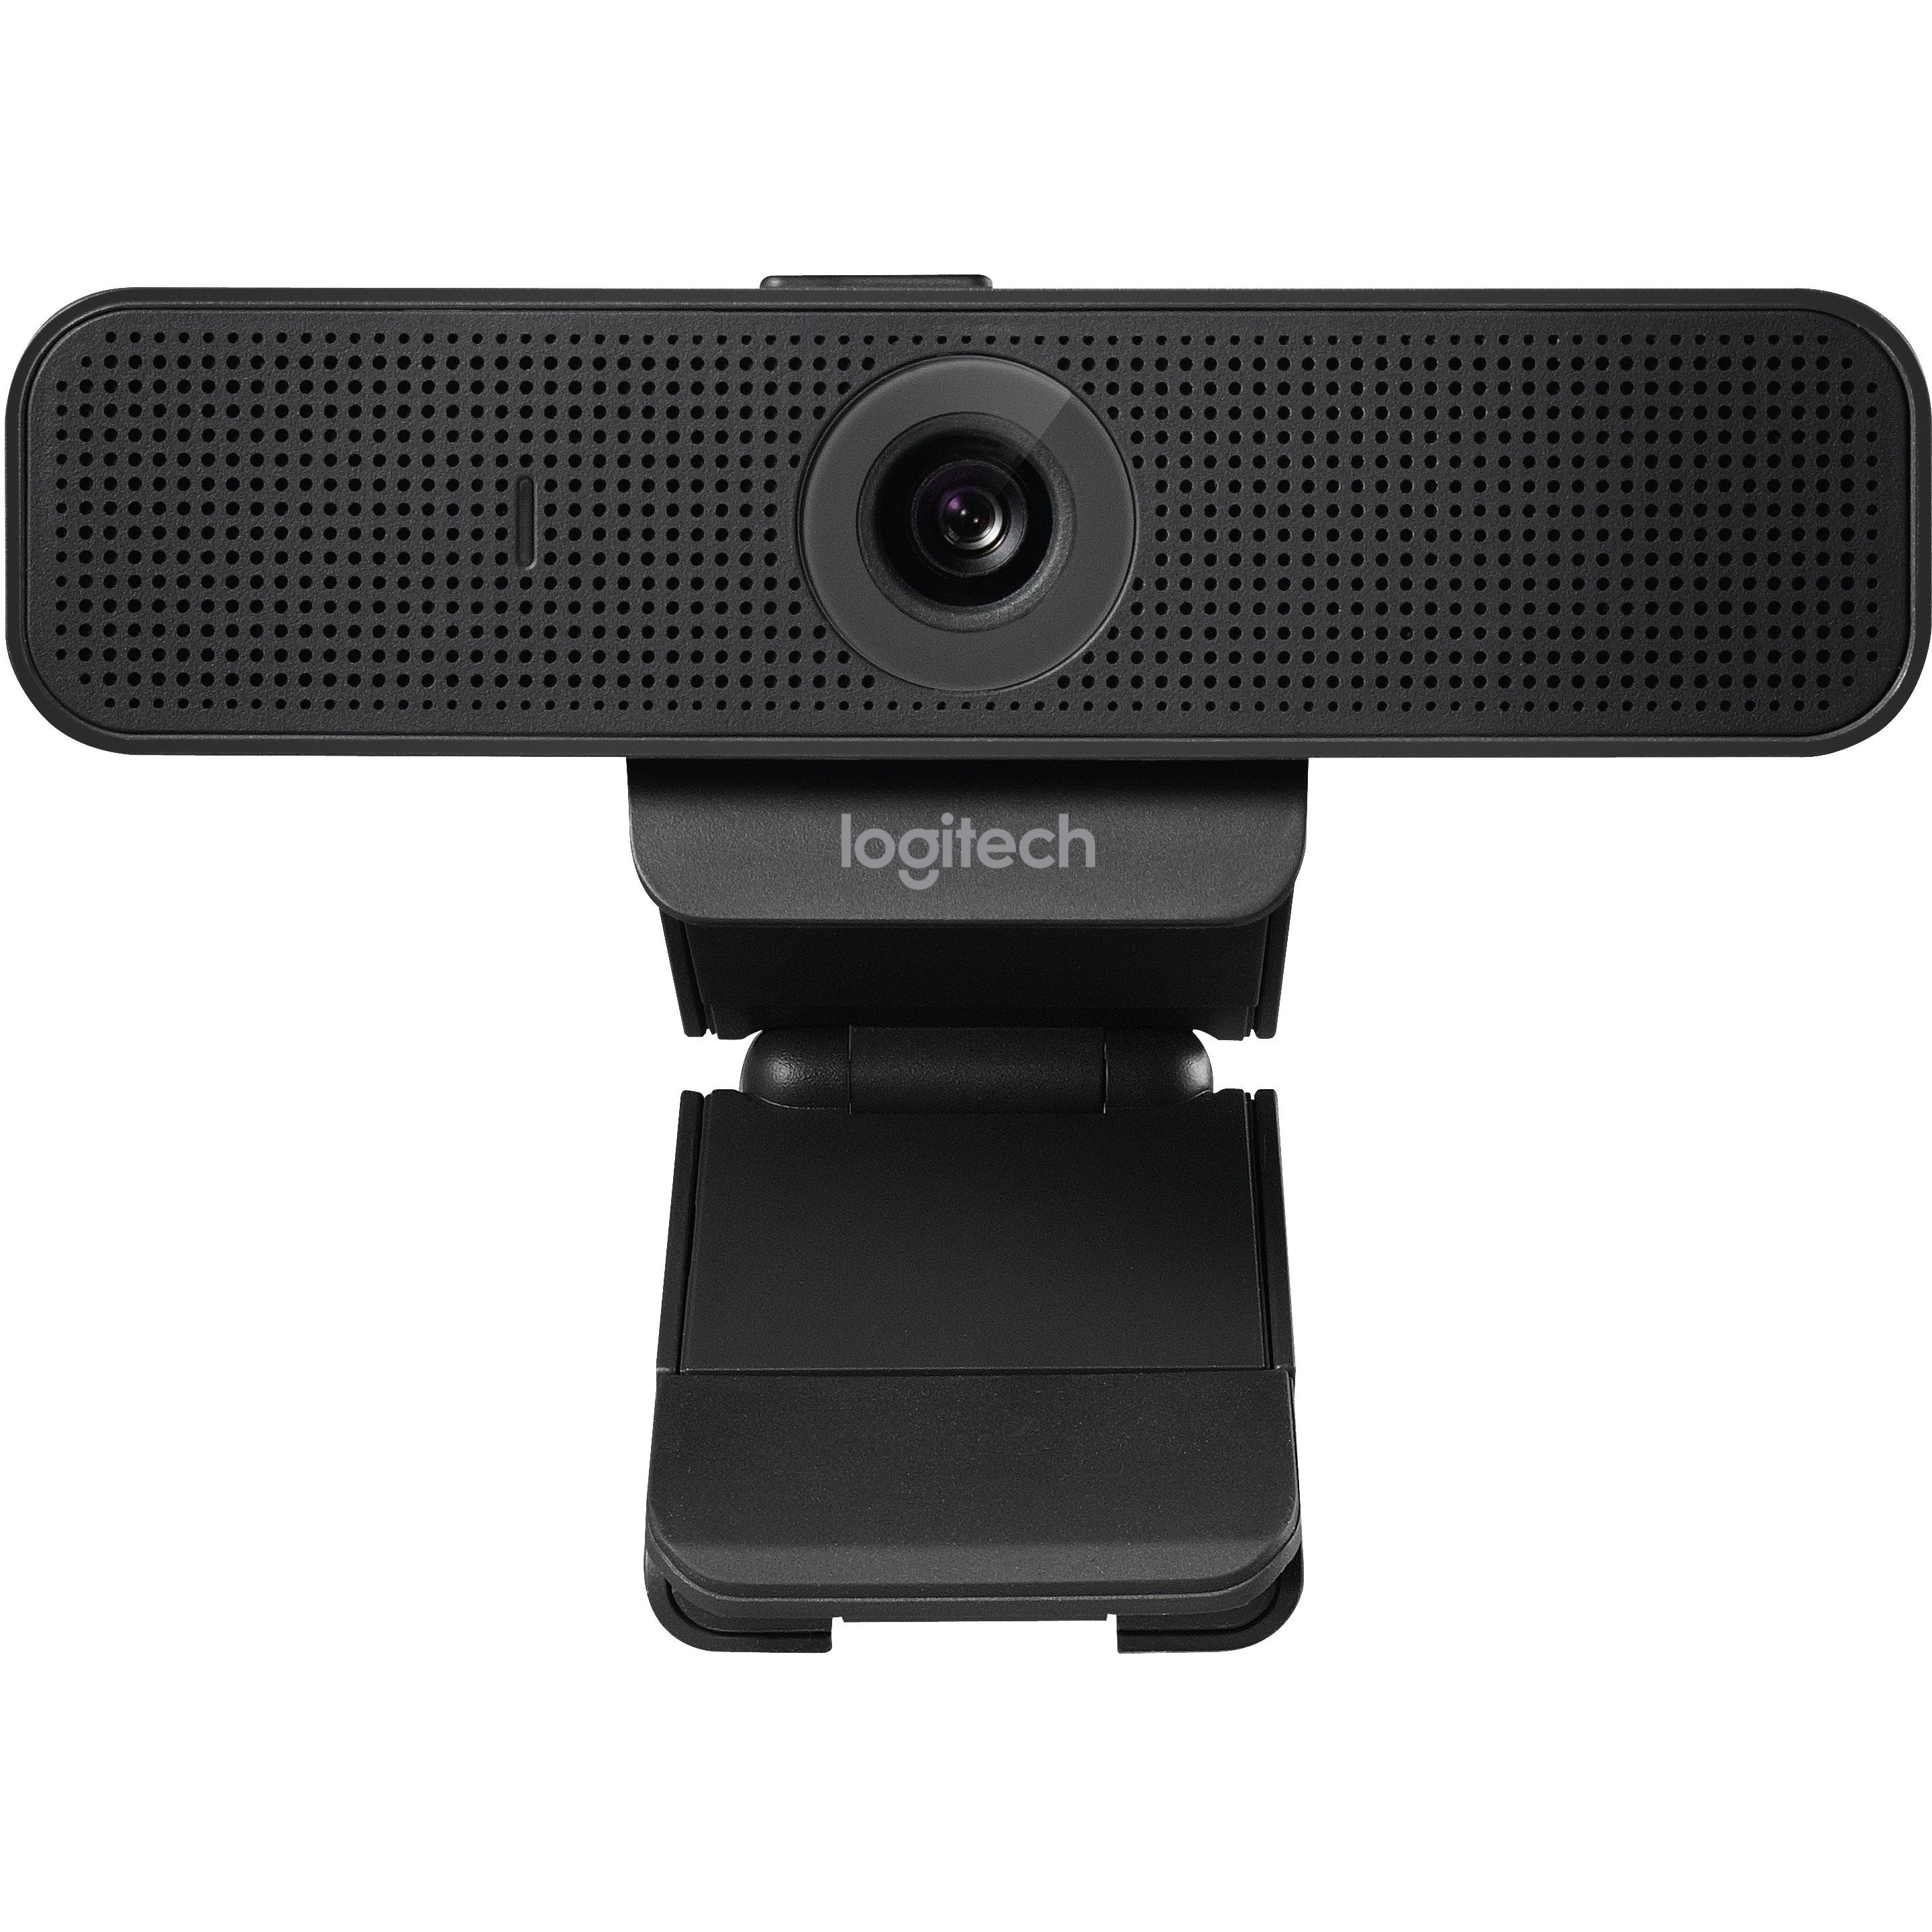   Webcams   Caméra Logitech Webcam C925e 960-001076